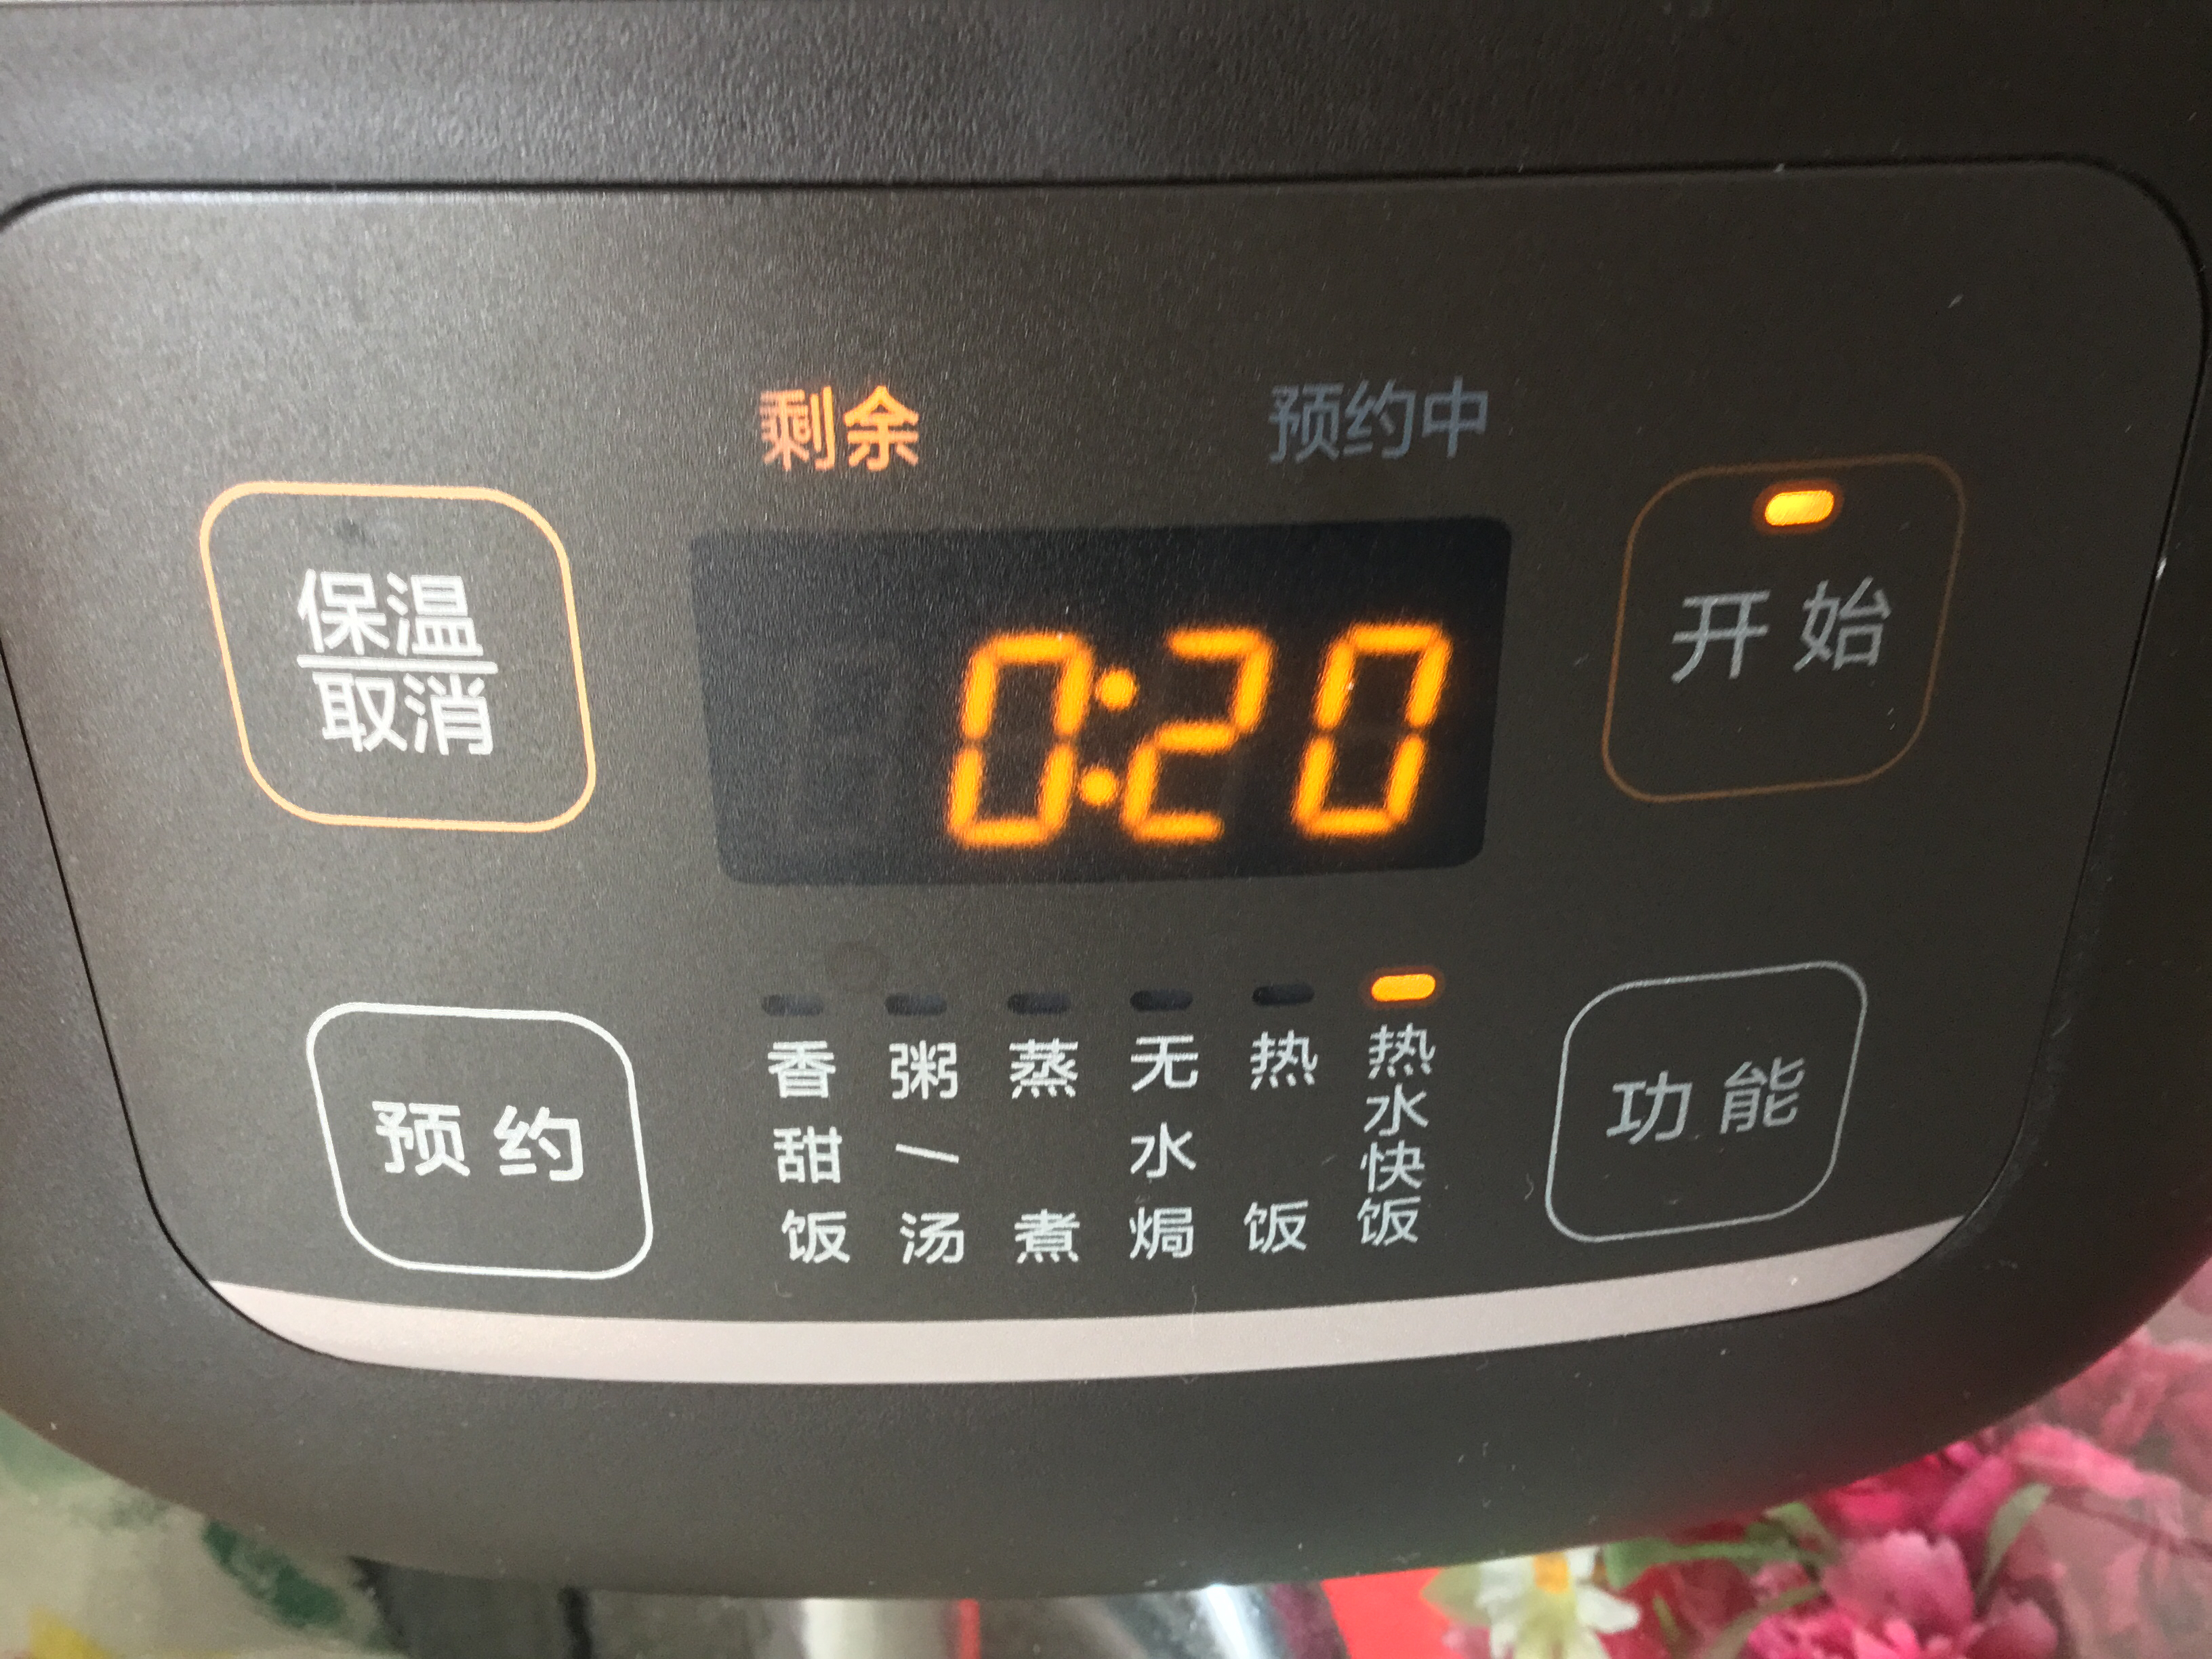 3、电饭煲预约功能如何使用：日本虎牌电饭煲预约功能如何使用？ 